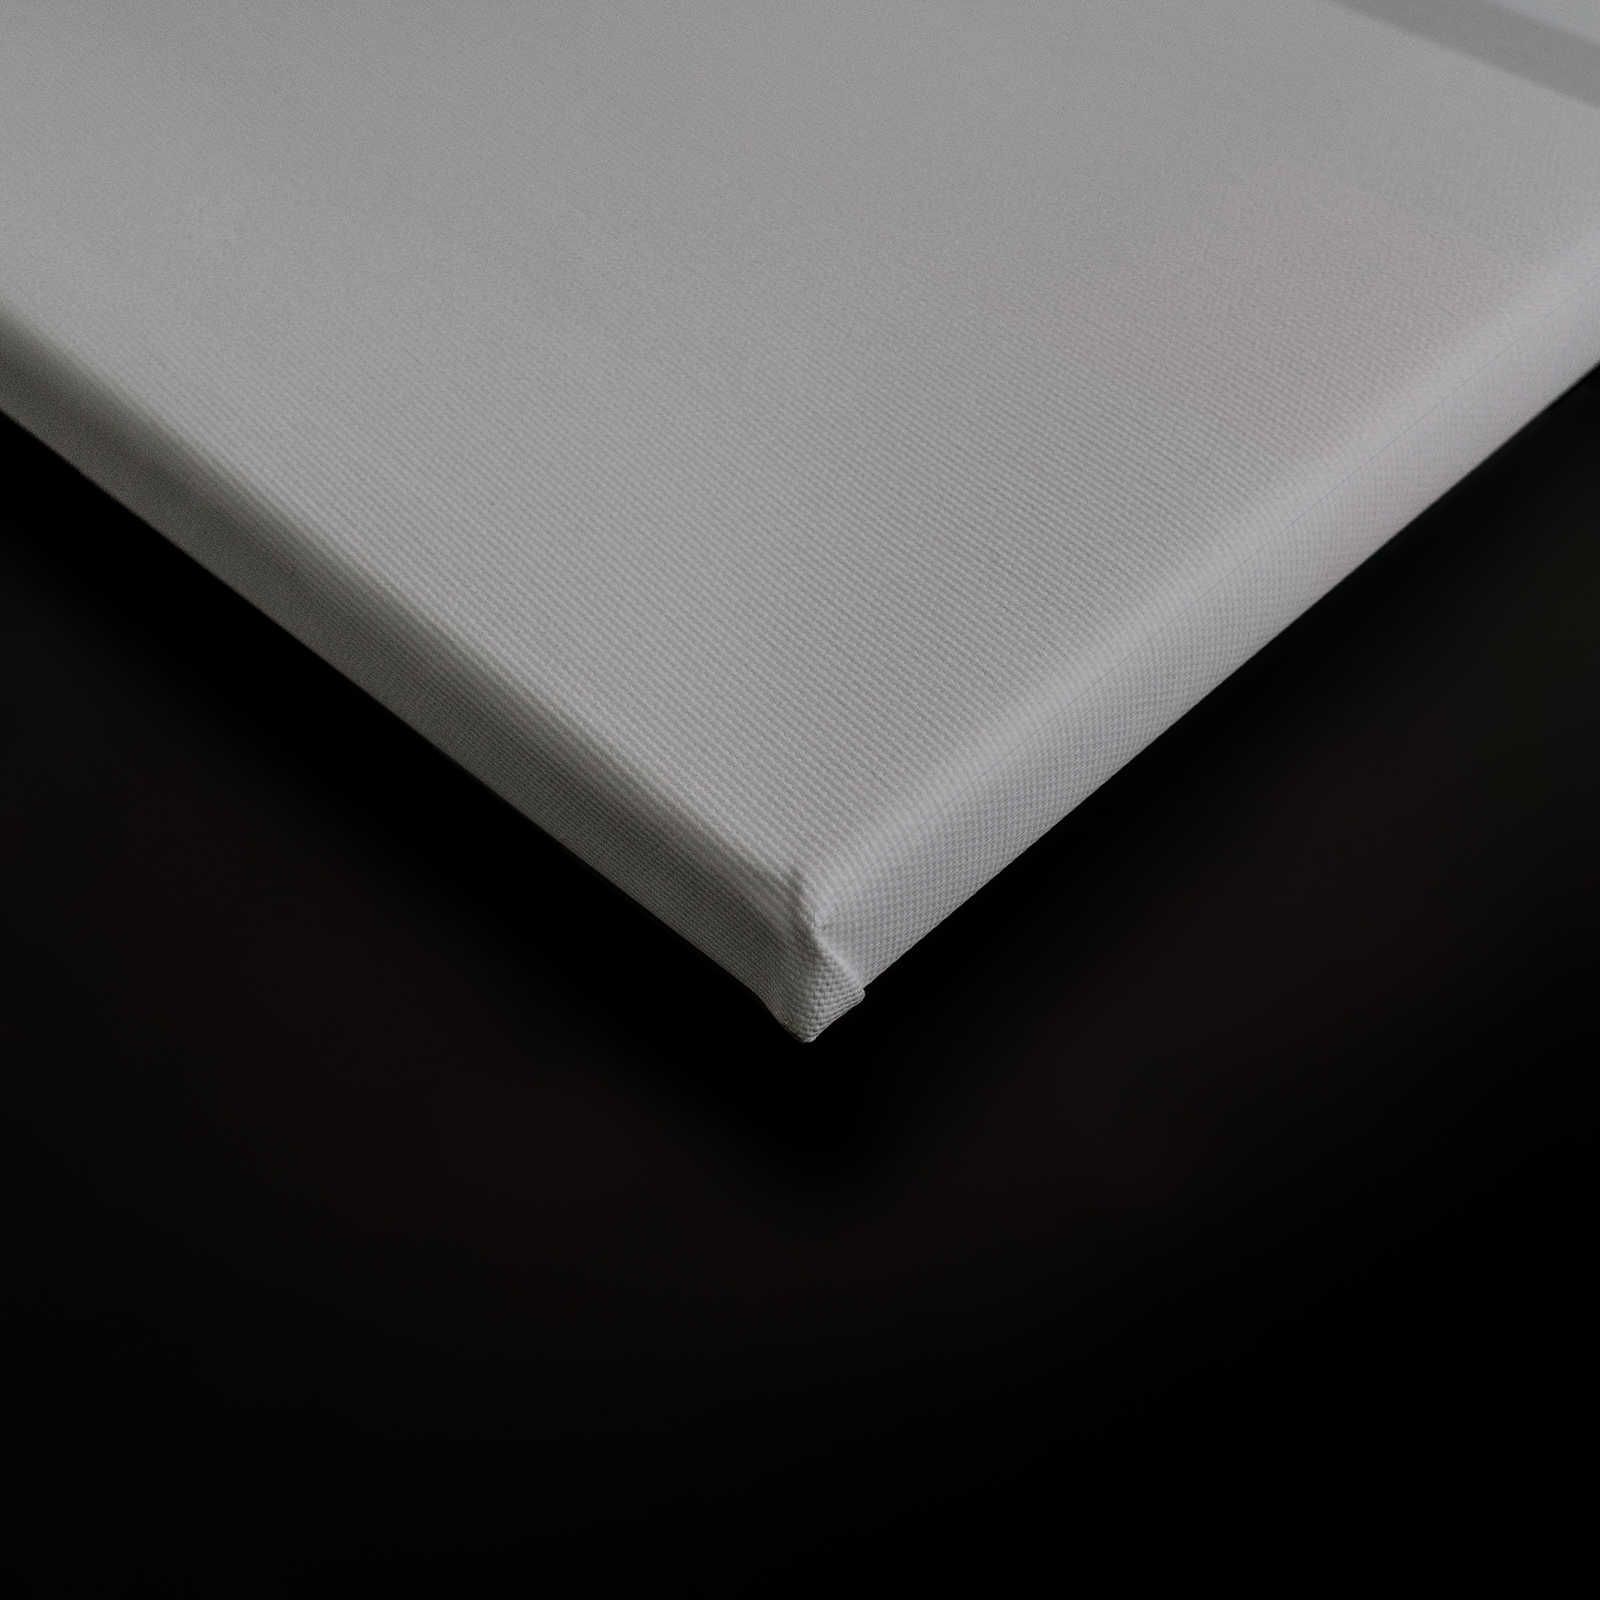             Detrás de la pared 1 - Lienzo 3D gris acero con diseño minimalista - 0,90 m x 0,60 m
        